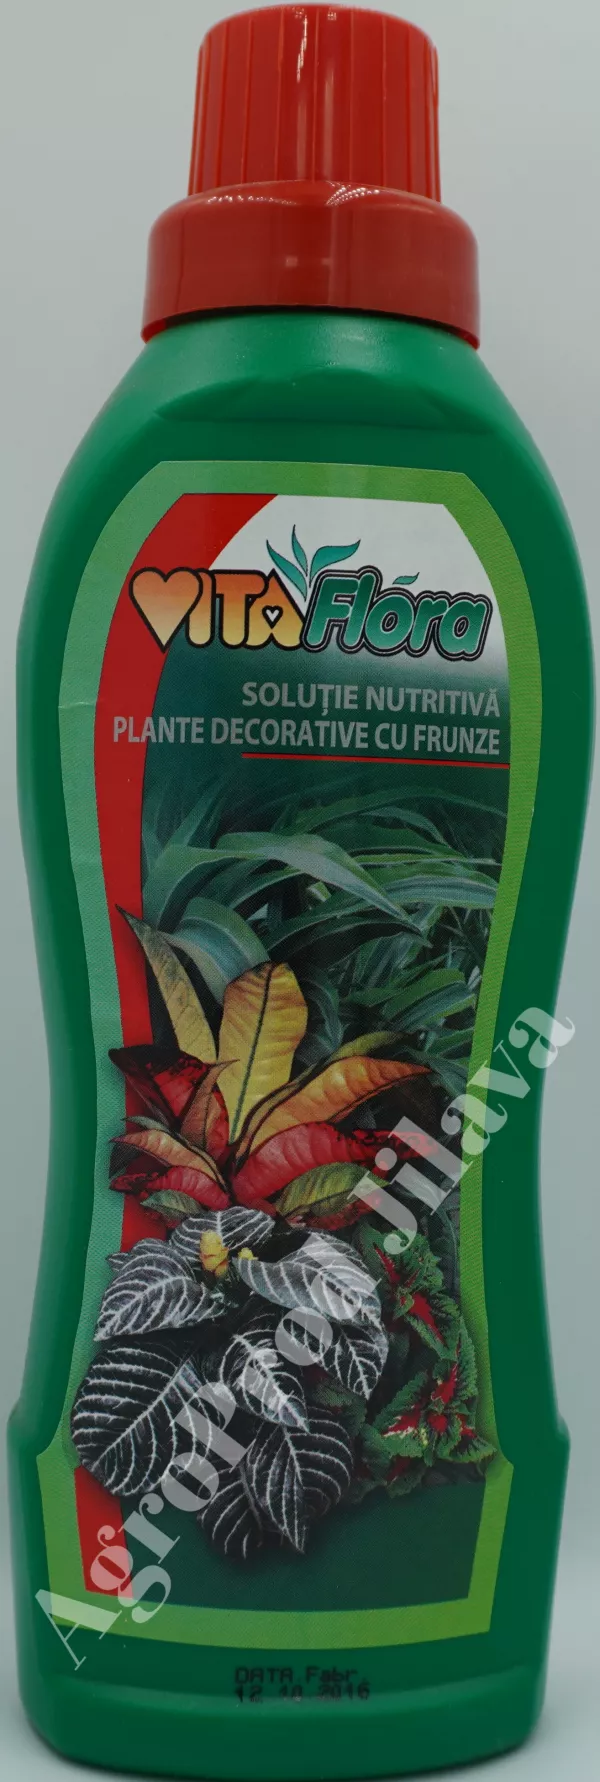 Vitaflora pentru plante cu frunze 500ml